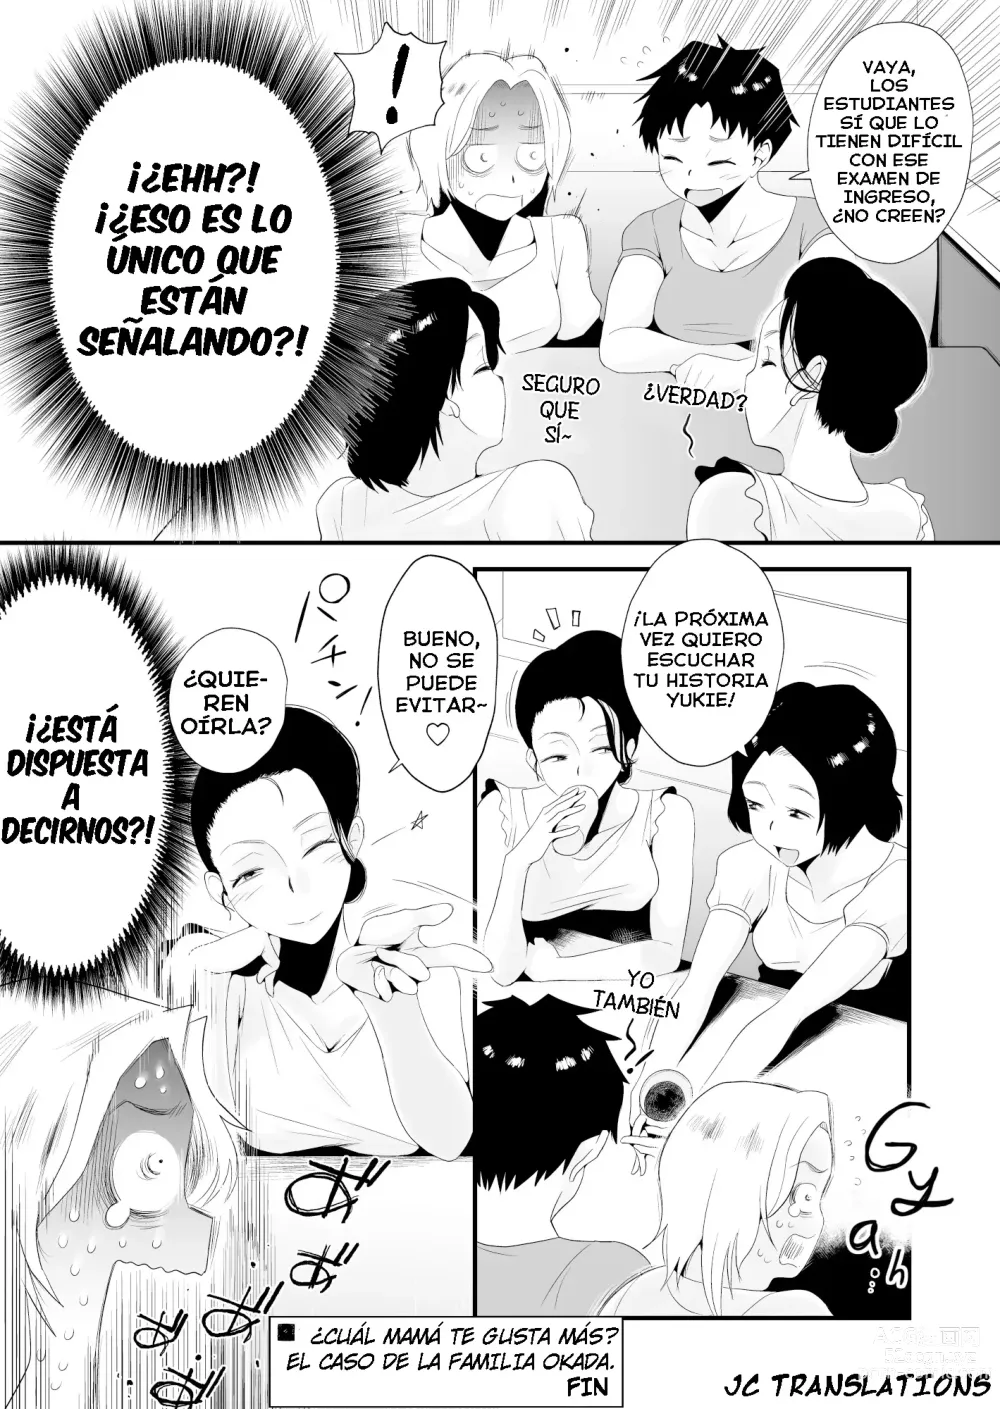 Page 60 of doujinshi ¿Cuál mamá te gusta más? ~La Familia Okada~